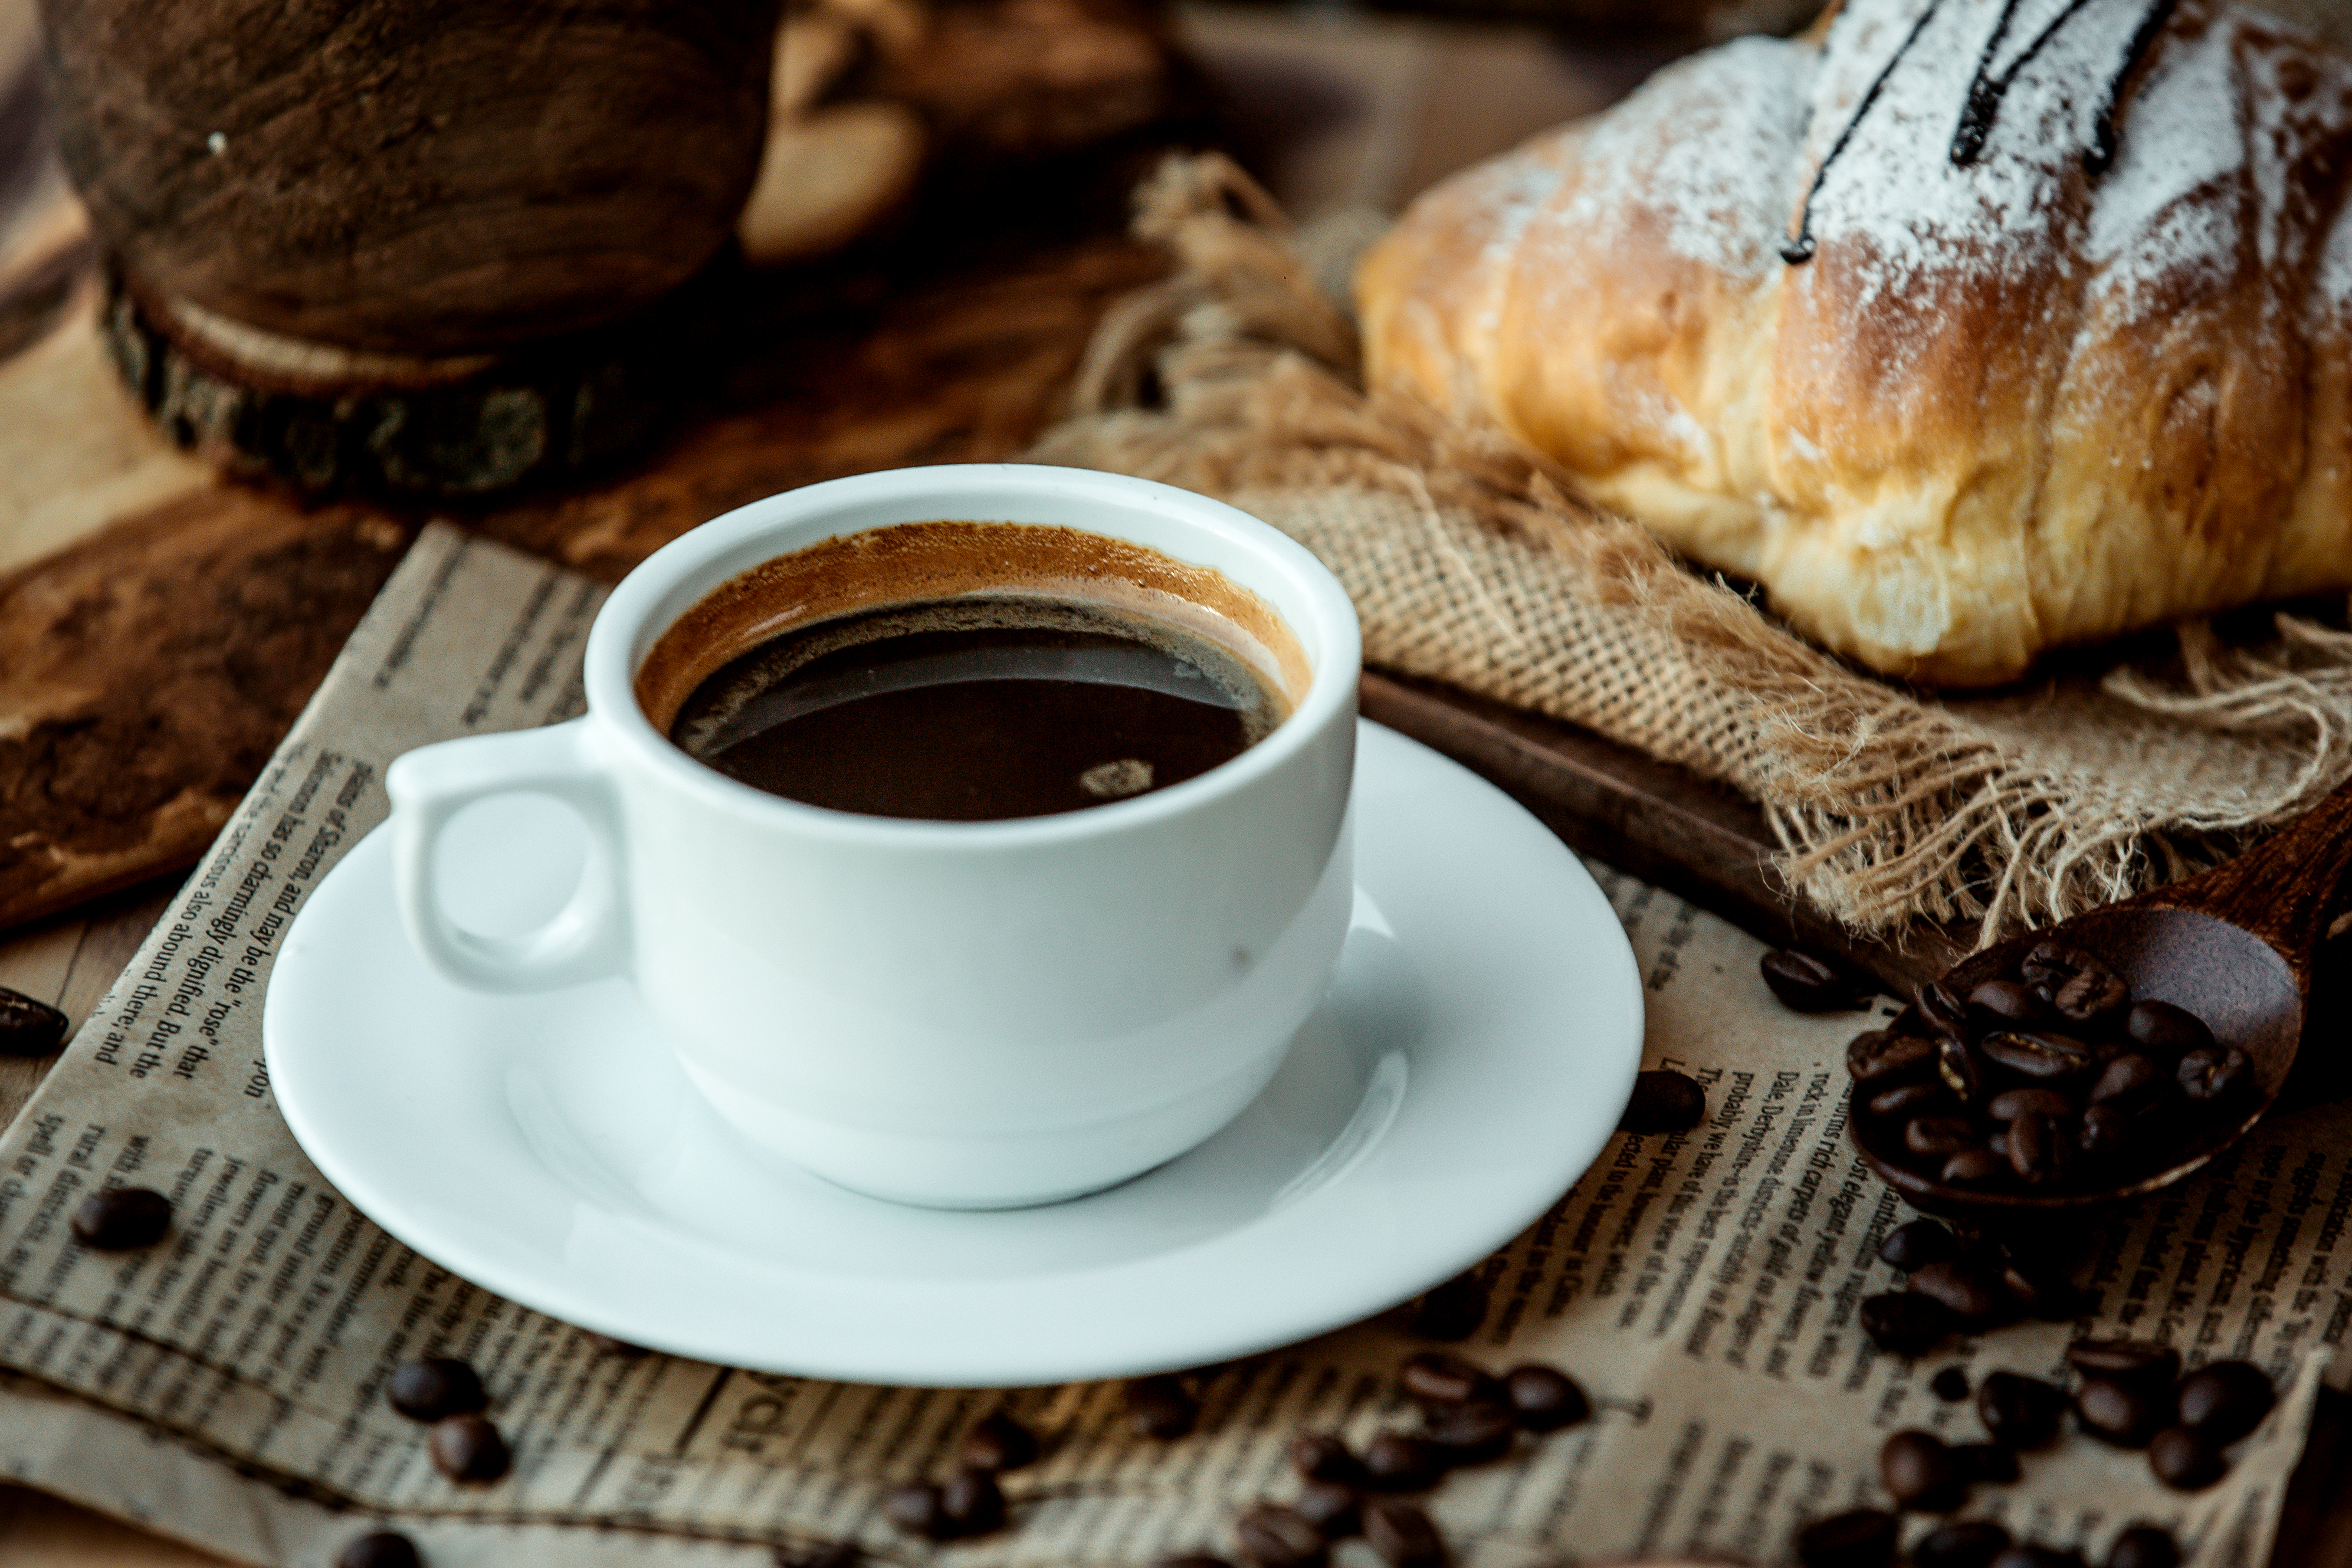 Jutarnja kafa: Kofein uđe u krvotok u roku 10 minuta, a evo što radi tijelu narednih 6 sati